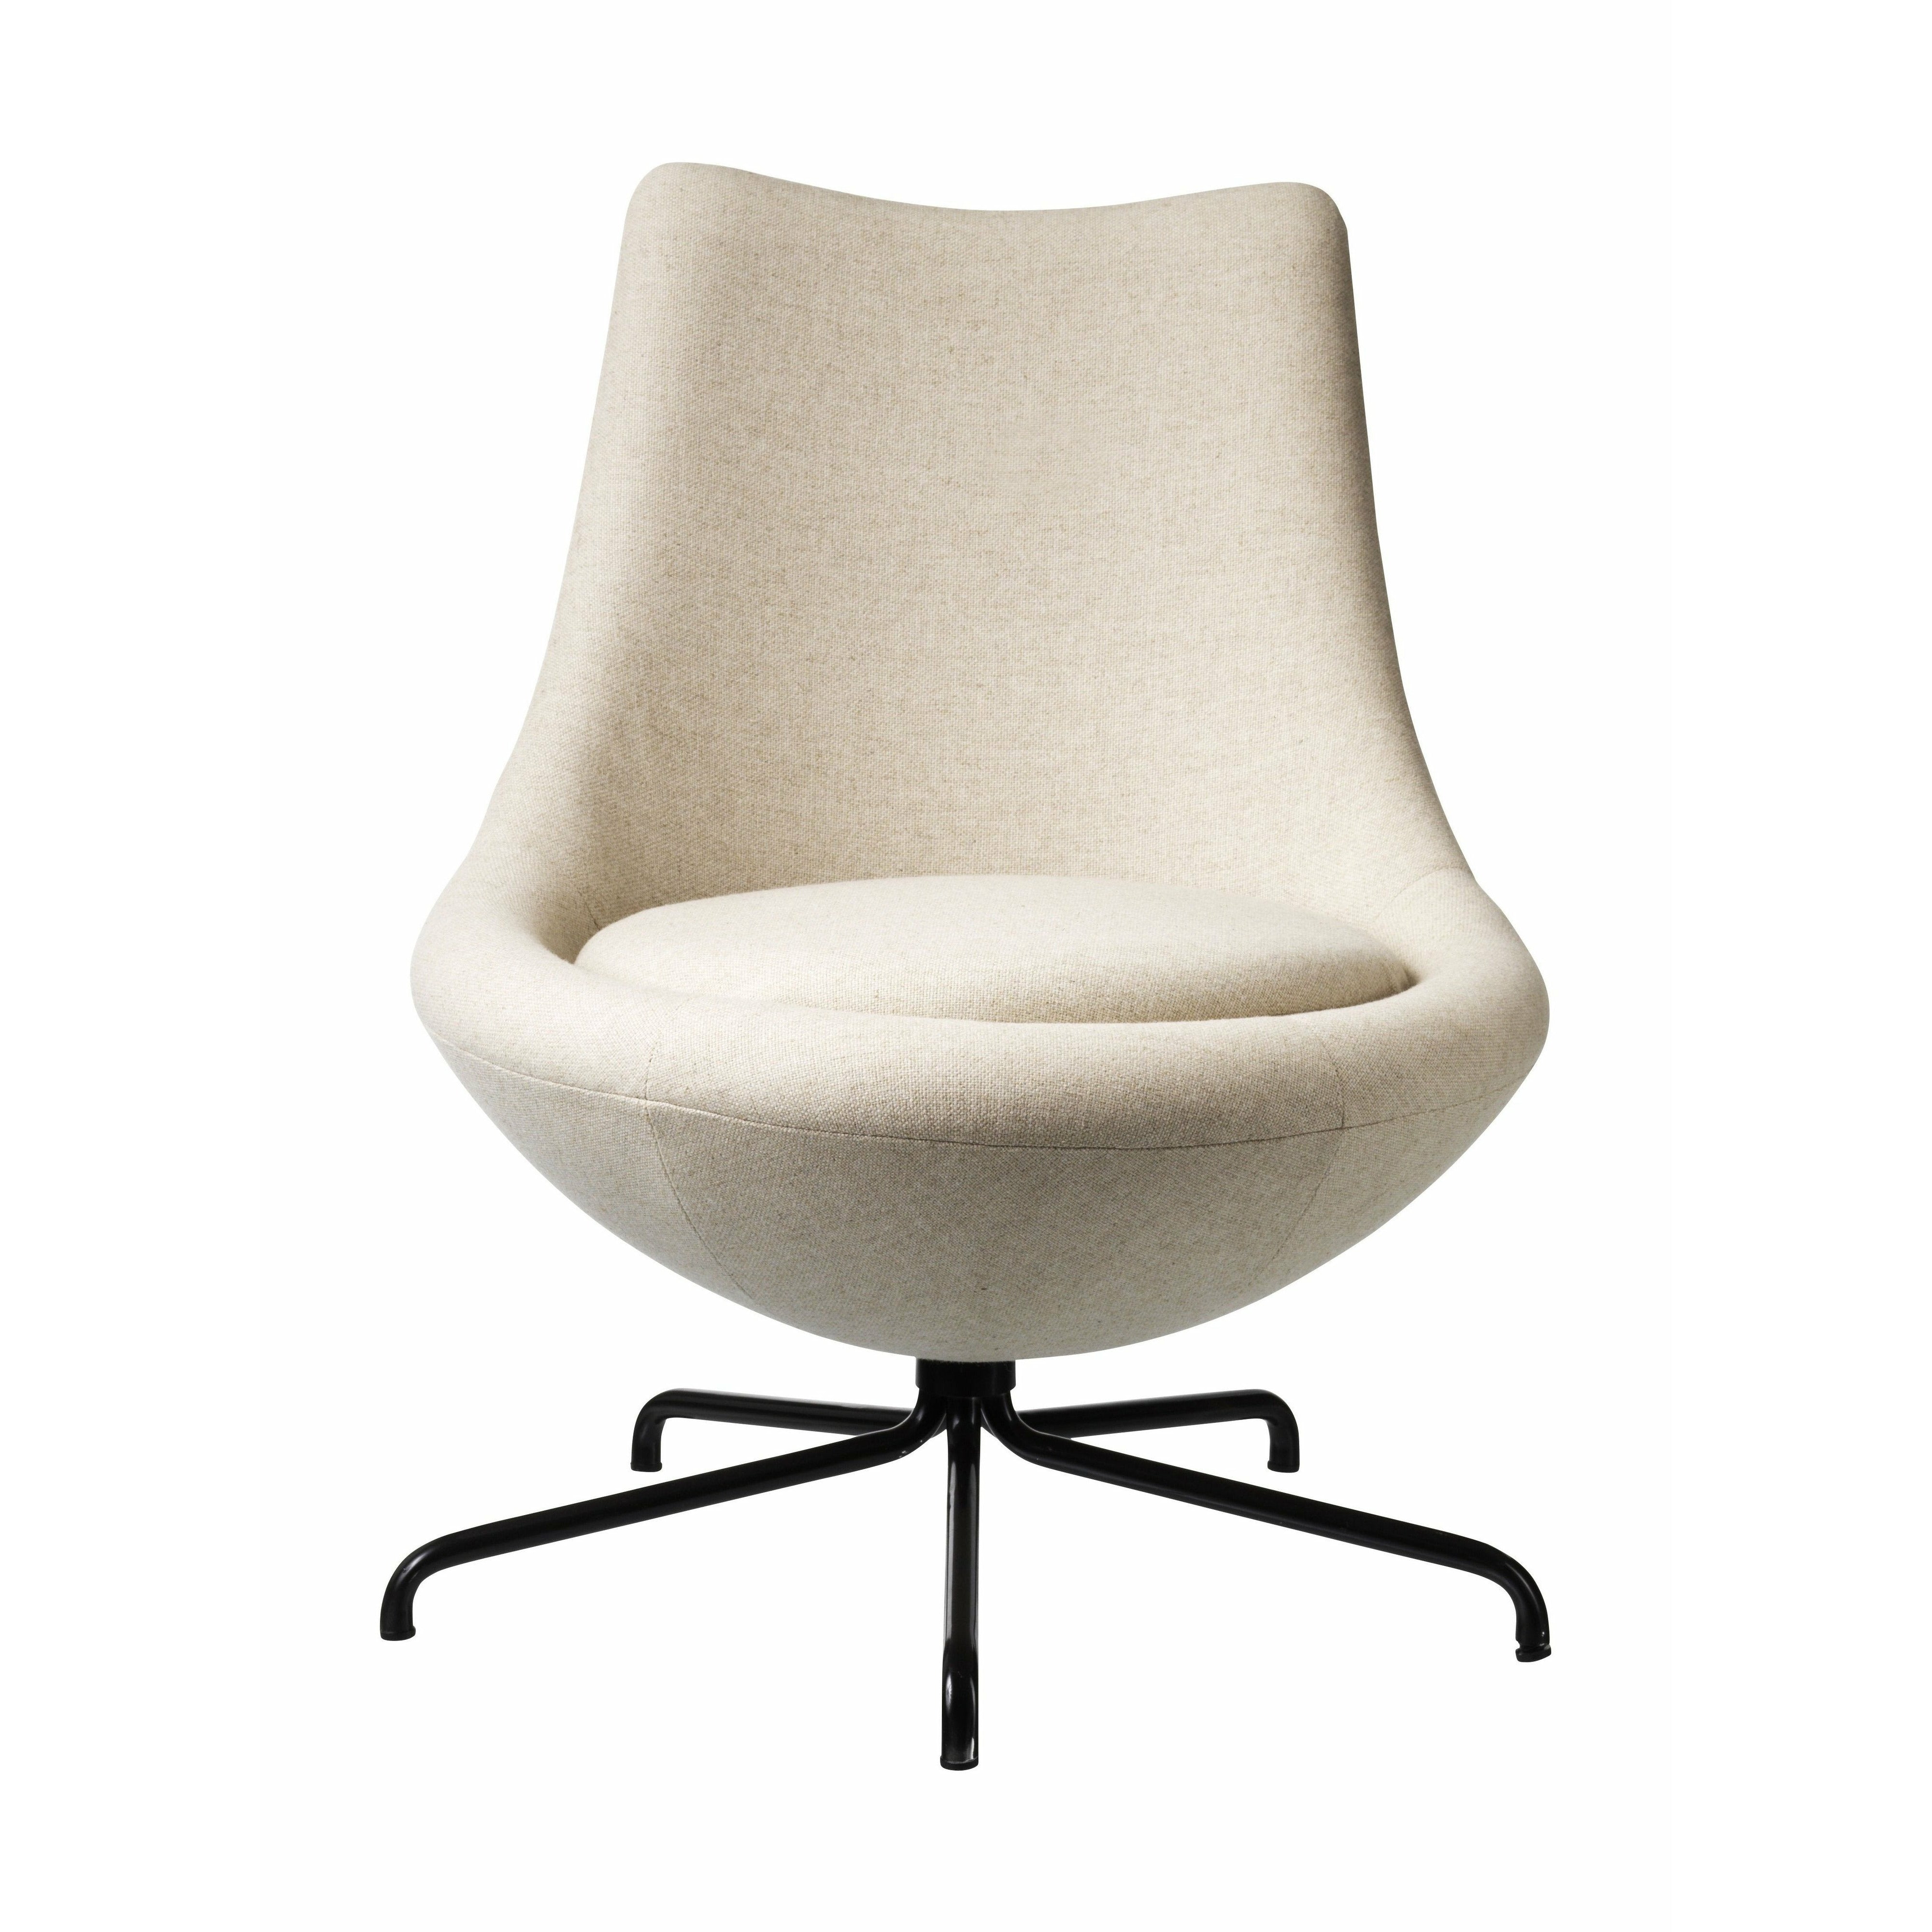 Fdb Møbler L40 Swivel Lounge Chair, Beige/Schwarvz